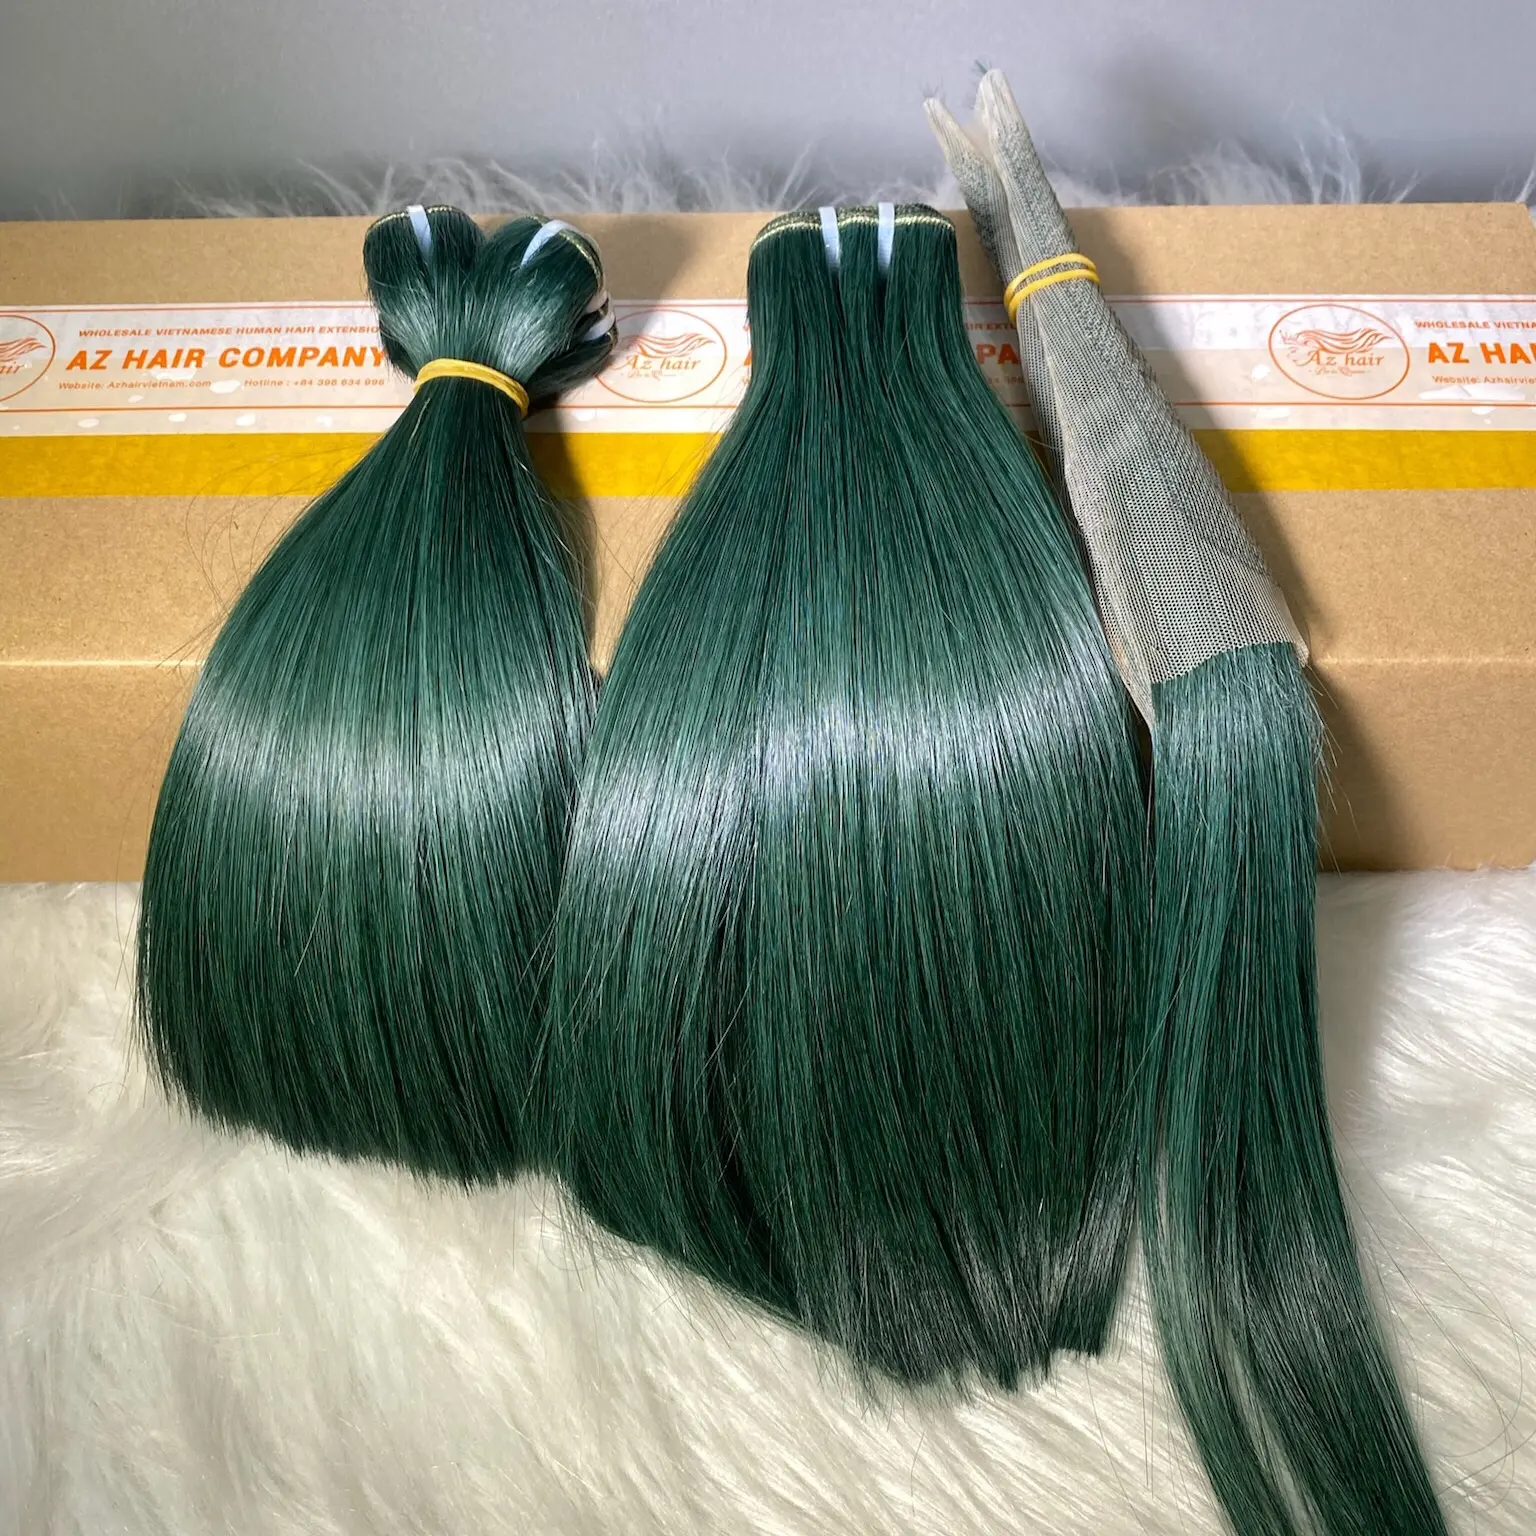 100% вьетнамские необработанные волосы, необработанные пучки и застежка, зеленый цвет, чтобы сделать парик, оптовая цена